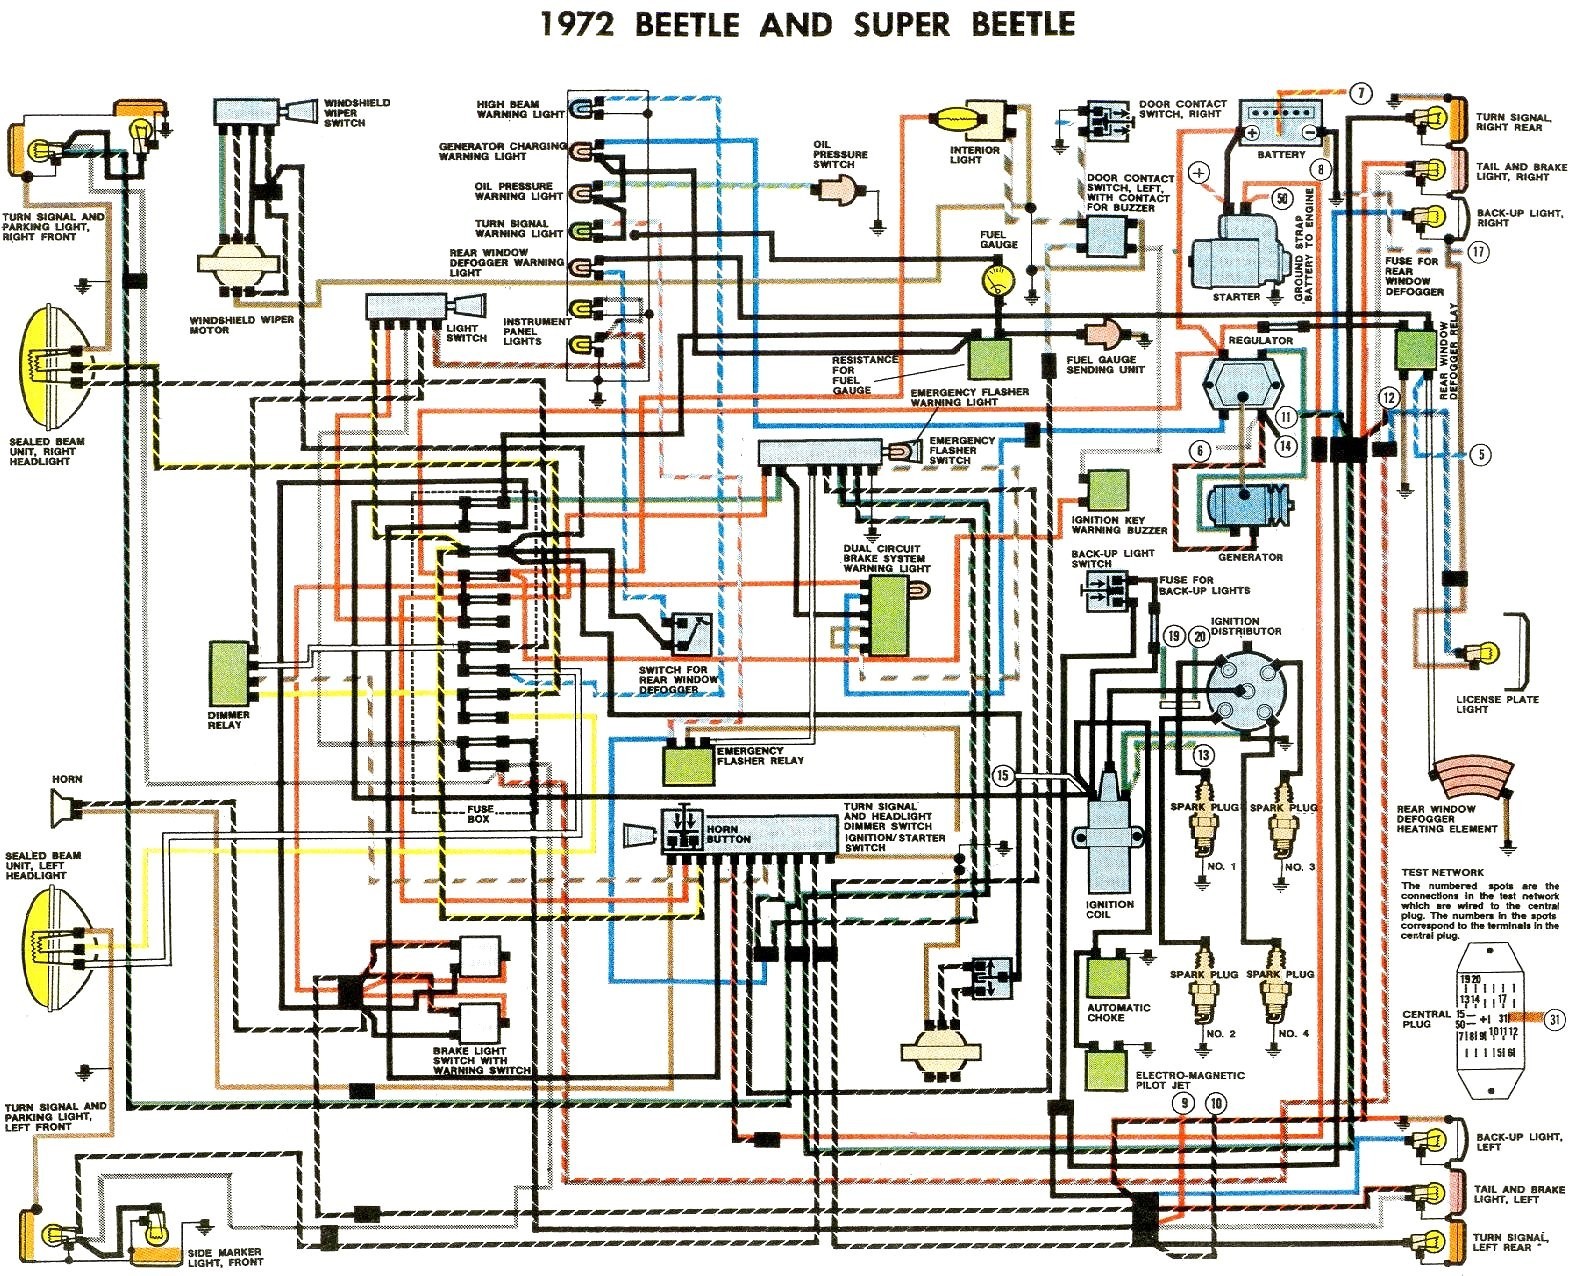 2003 Vw Passat Wiring Diagram 2007 Volkswagen Rabbit Wiring Diagram Wiring Diagram toolbox Of 2003 Vw Passat Wiring Diagram